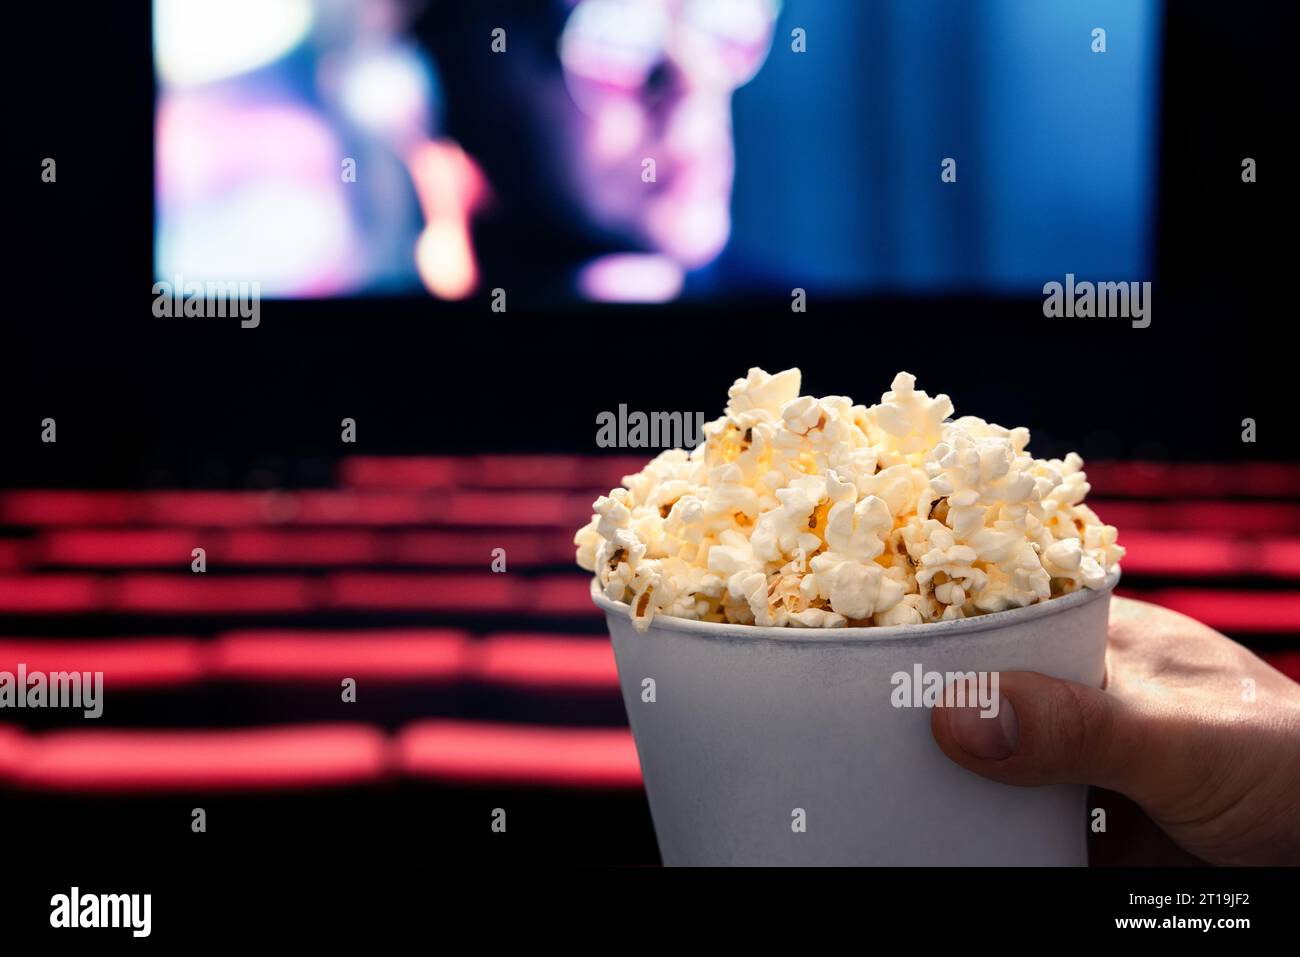 Filme und Popcorn. Ein Mann hält Popcorn-Box im Kino. Action, Thriller oder SciFi-Unterhaltung auf dem Bildschirm. Rote Sitze im dunklen Theater. Salziger Snack. Stockfoto